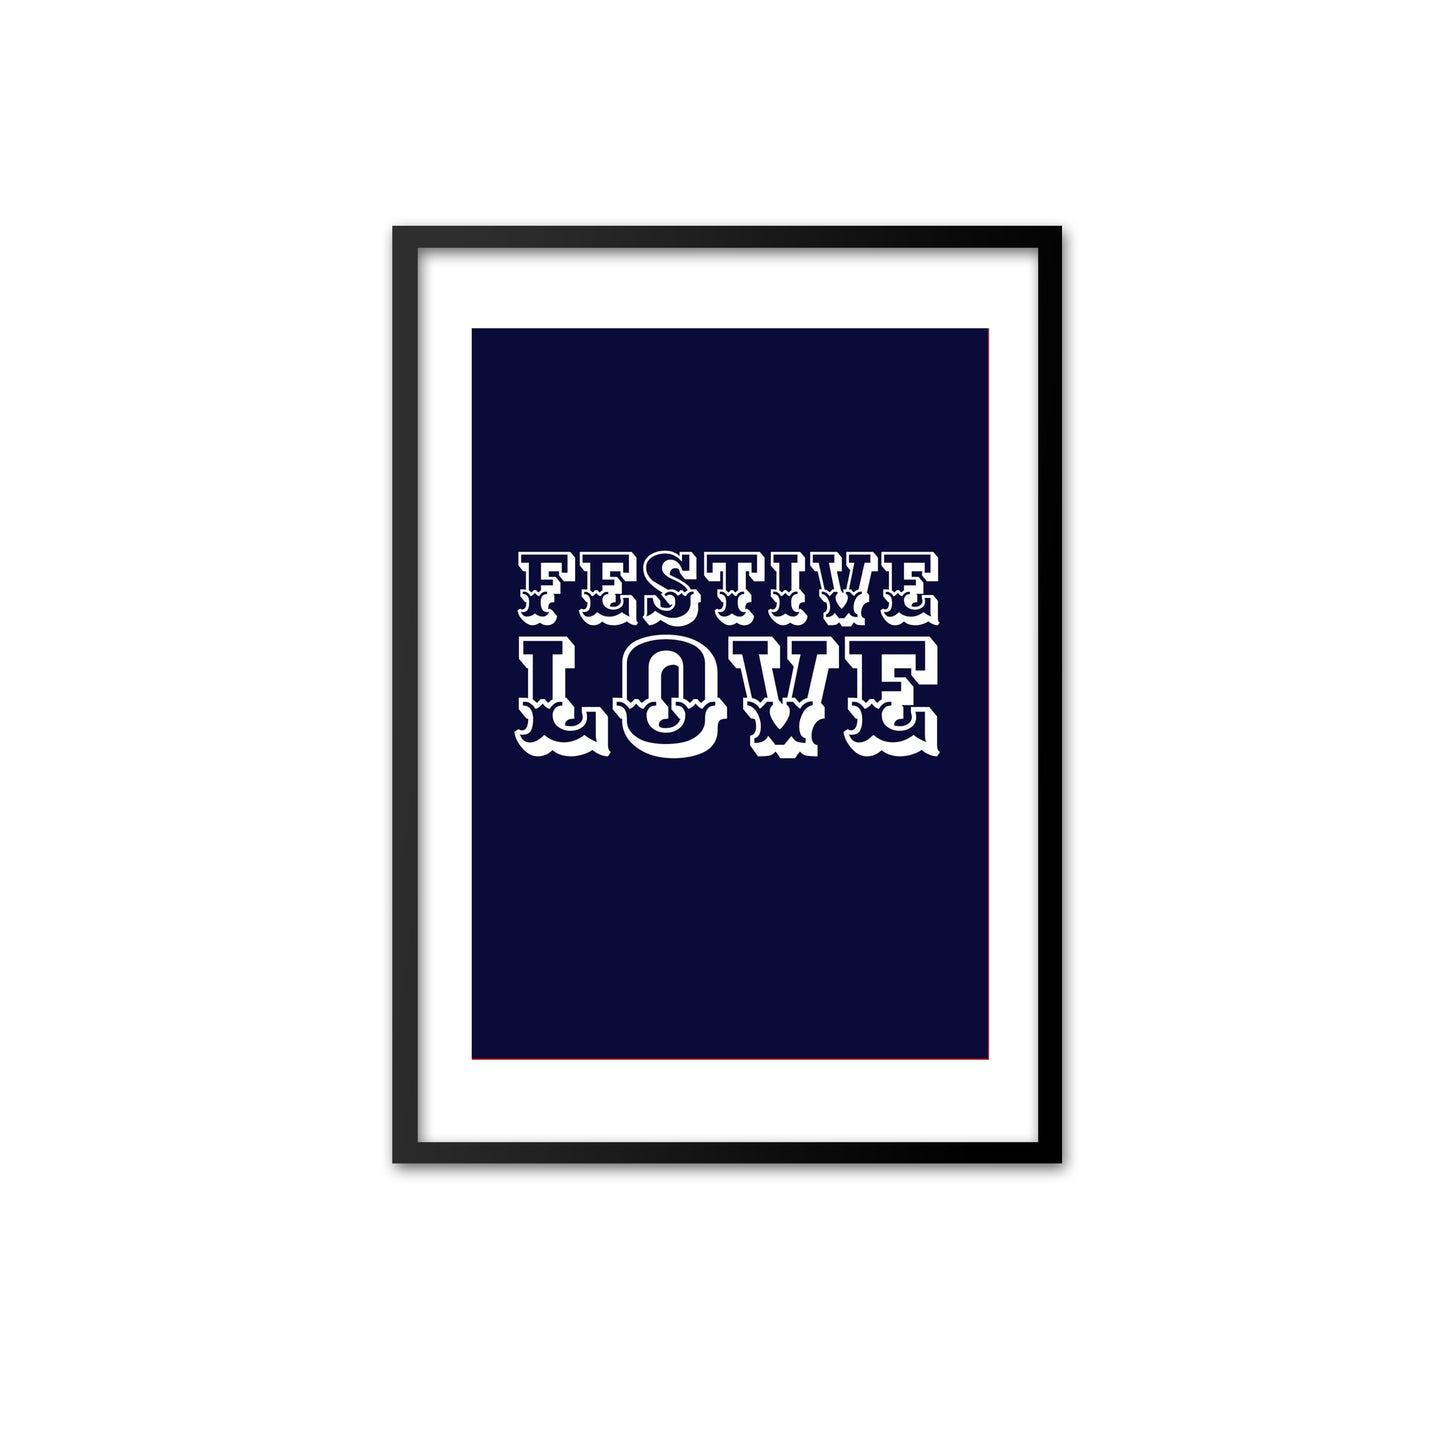 Festive Love - white on navy blue print